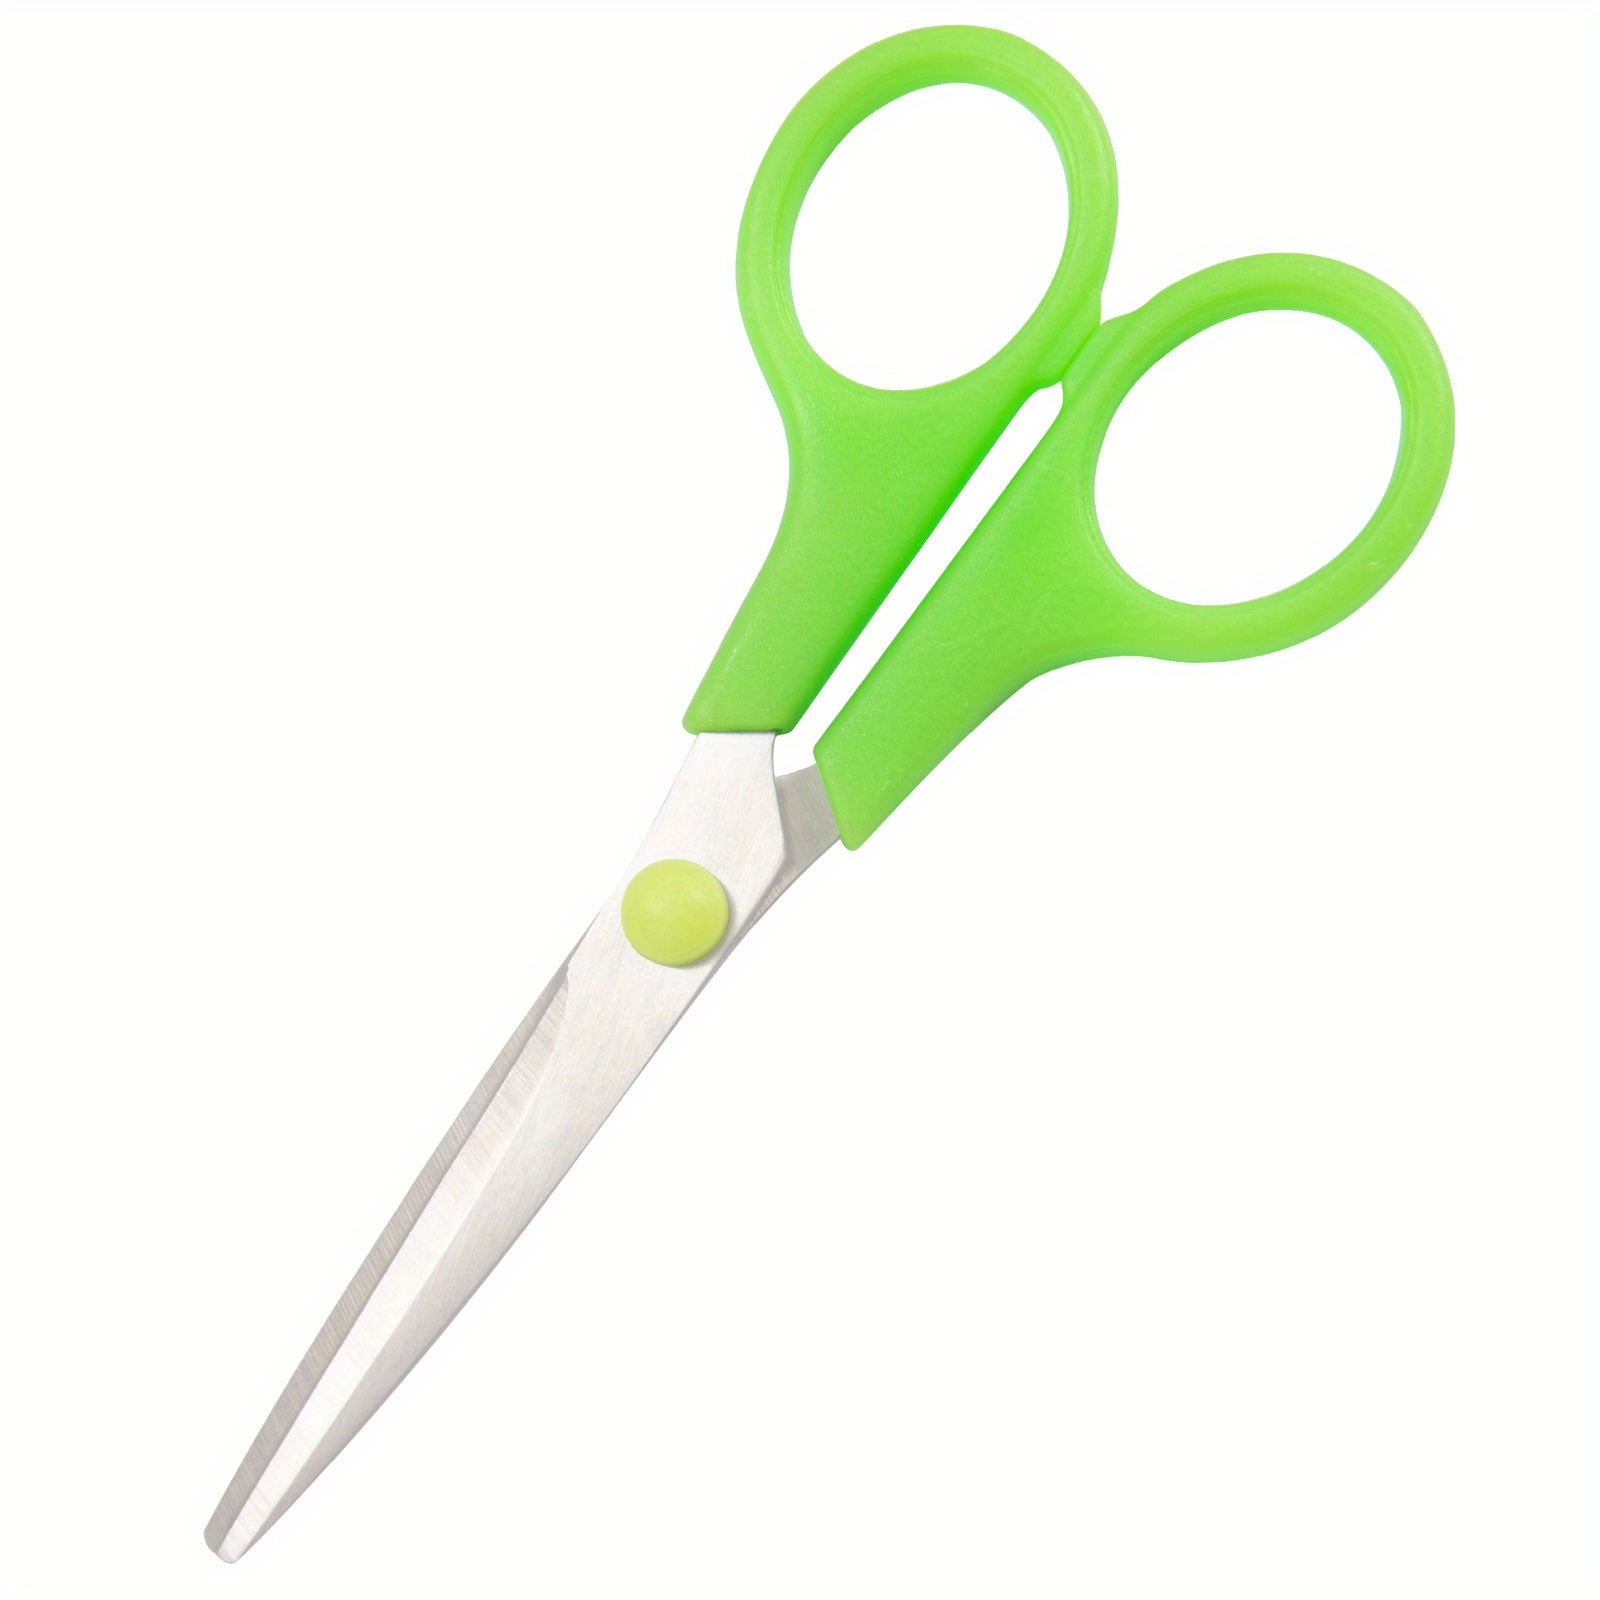 High Precision Detail Scissor